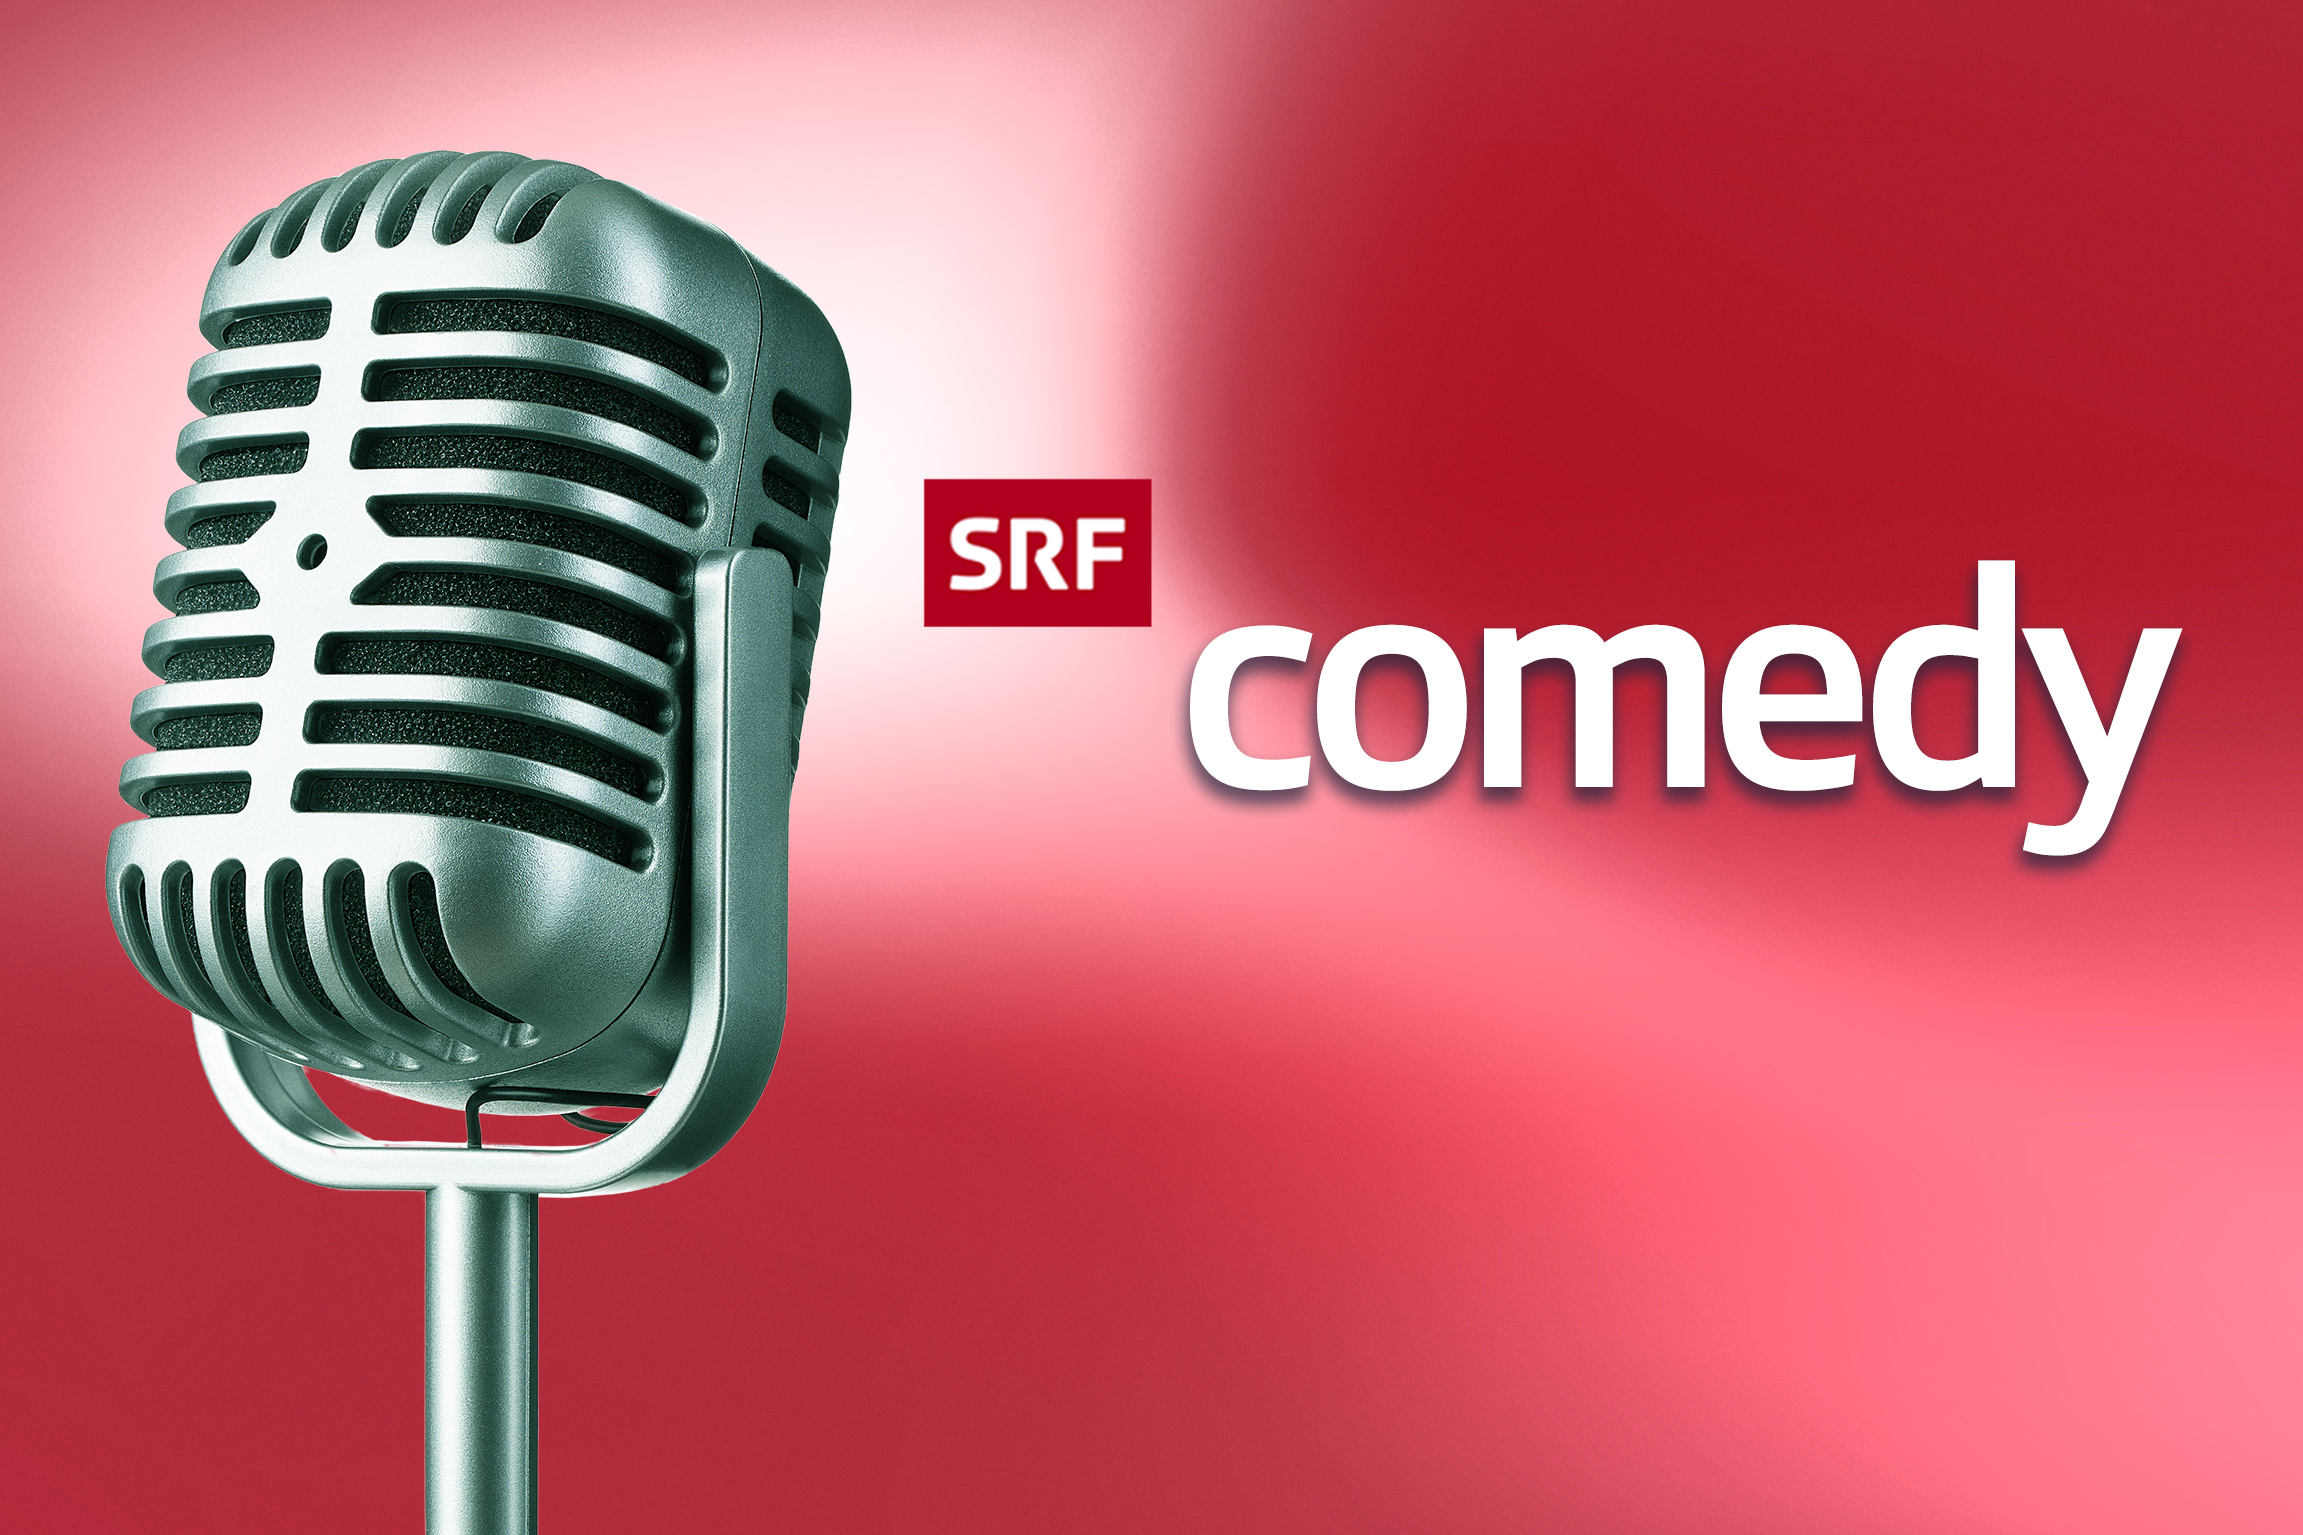 SRF Comedy Keyvisual2023Copyright: SRF